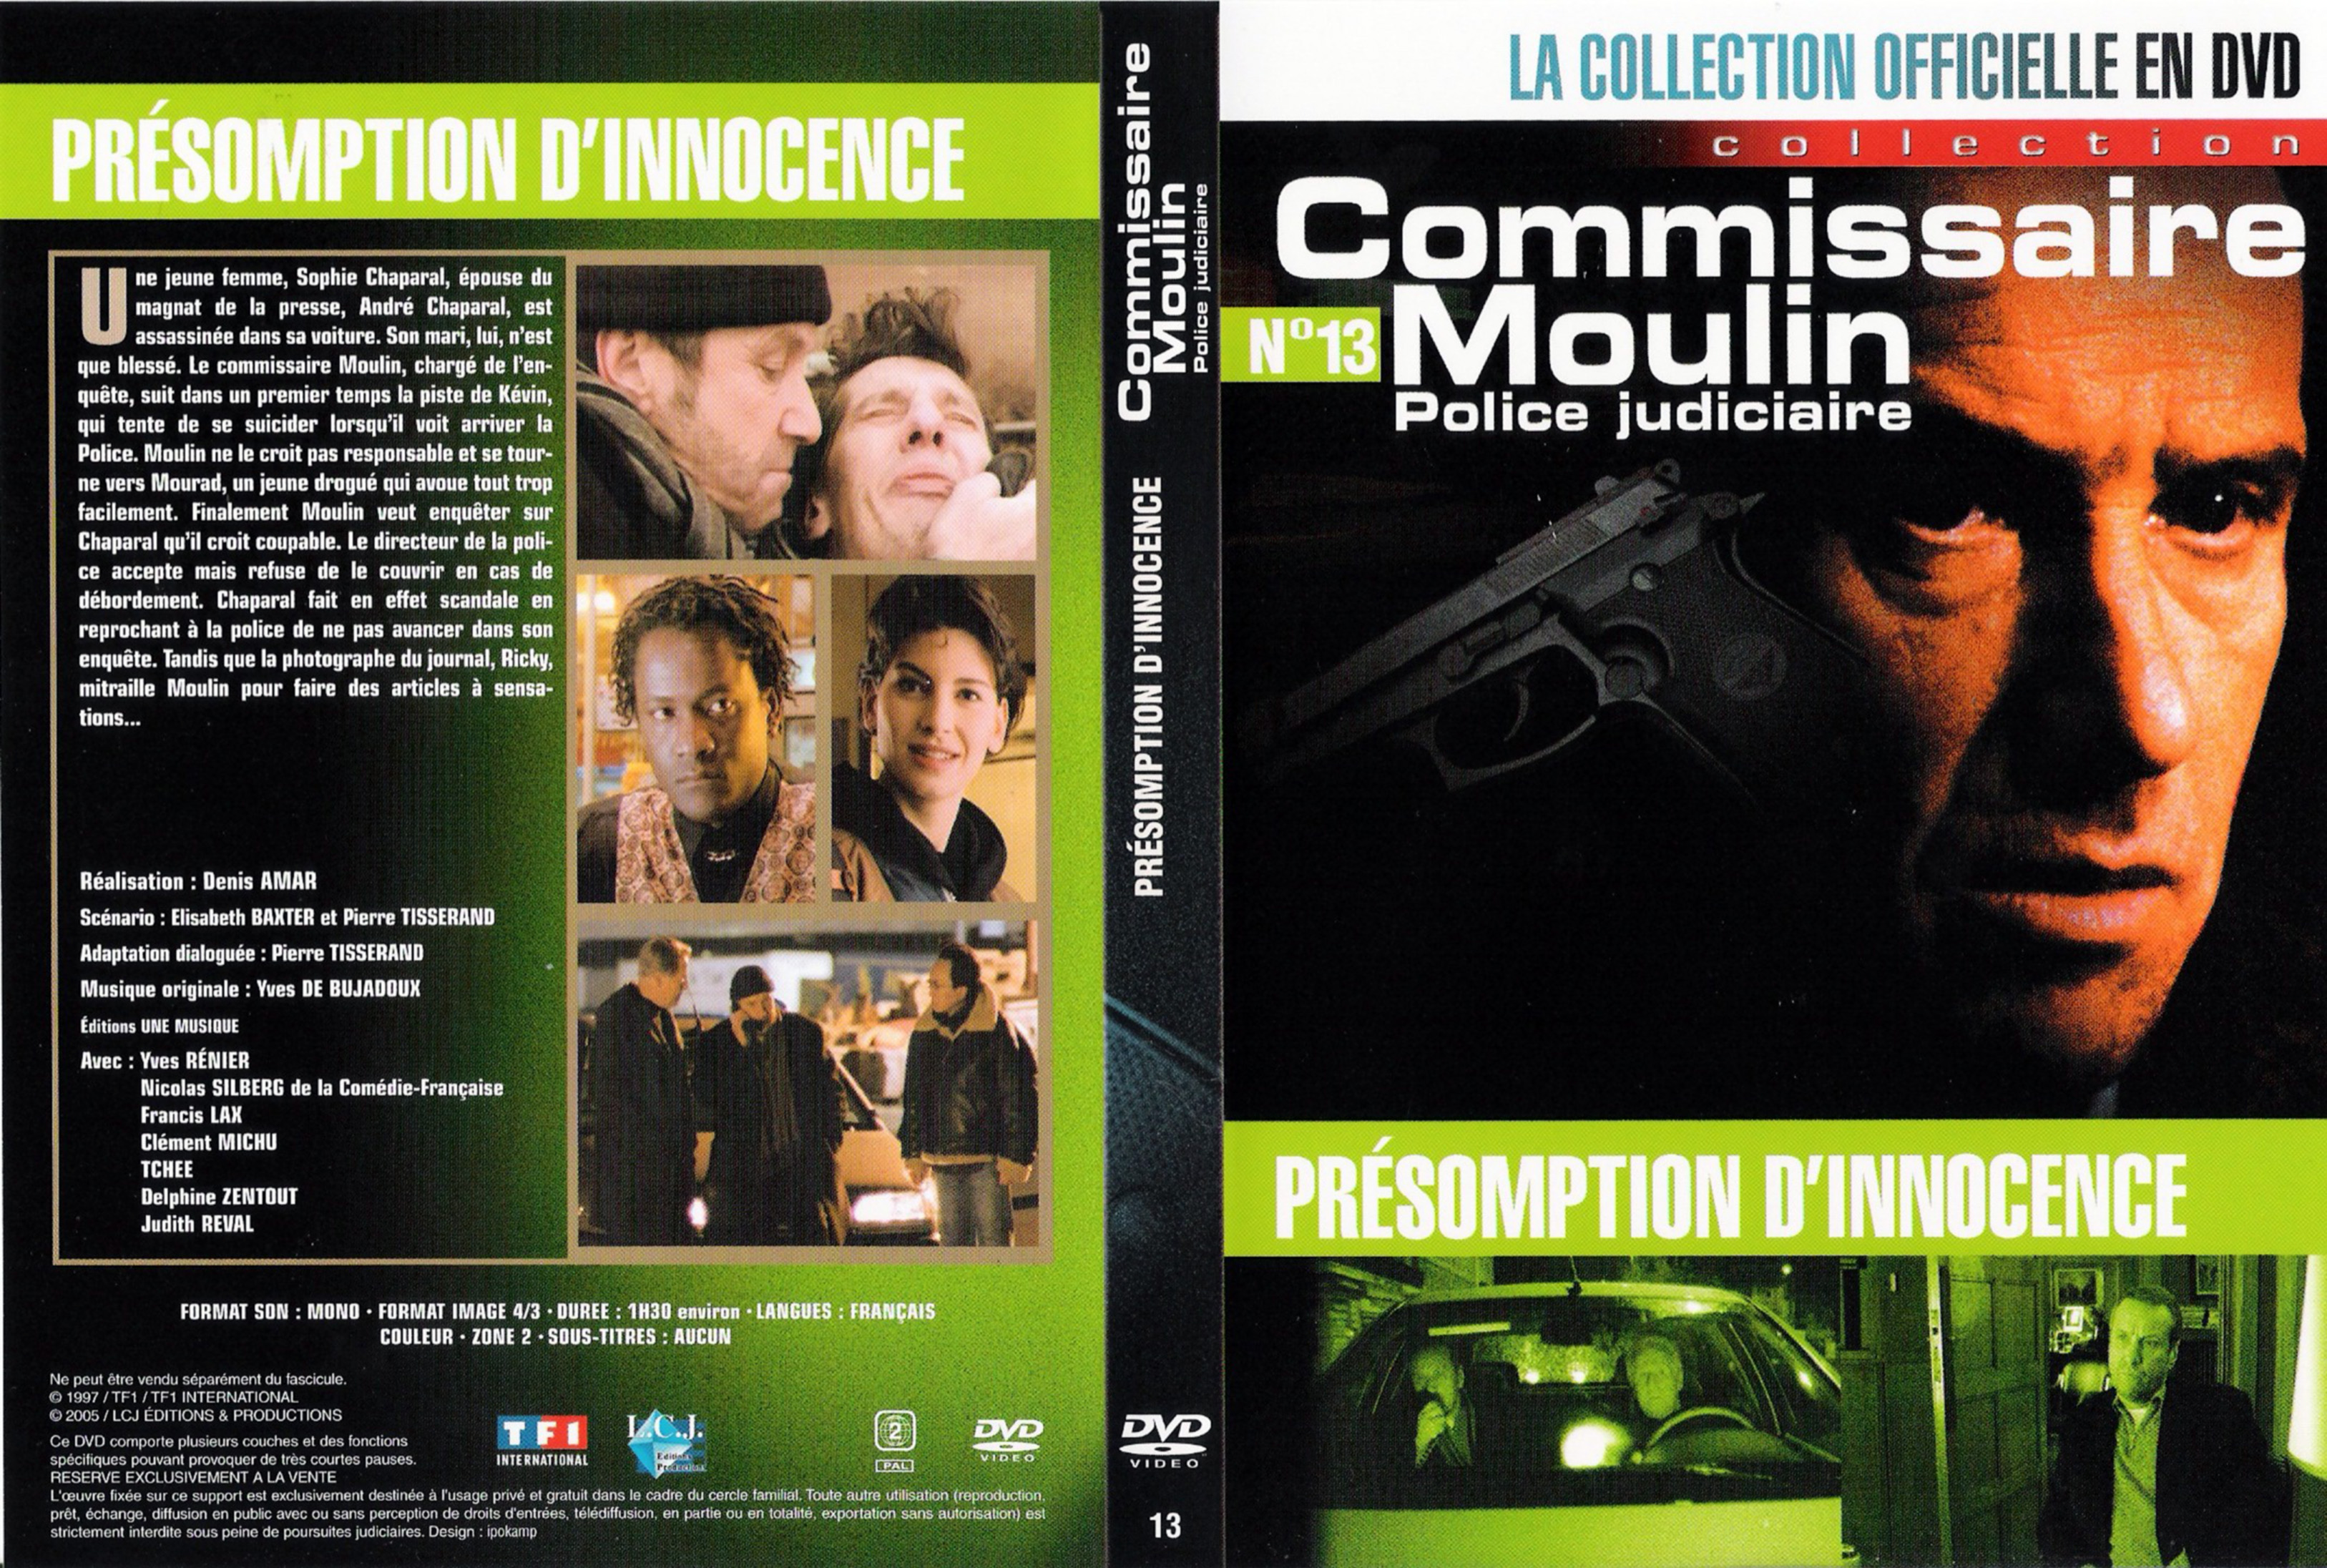 Jaquette DVD Commissaire Moulin - Prsomption d